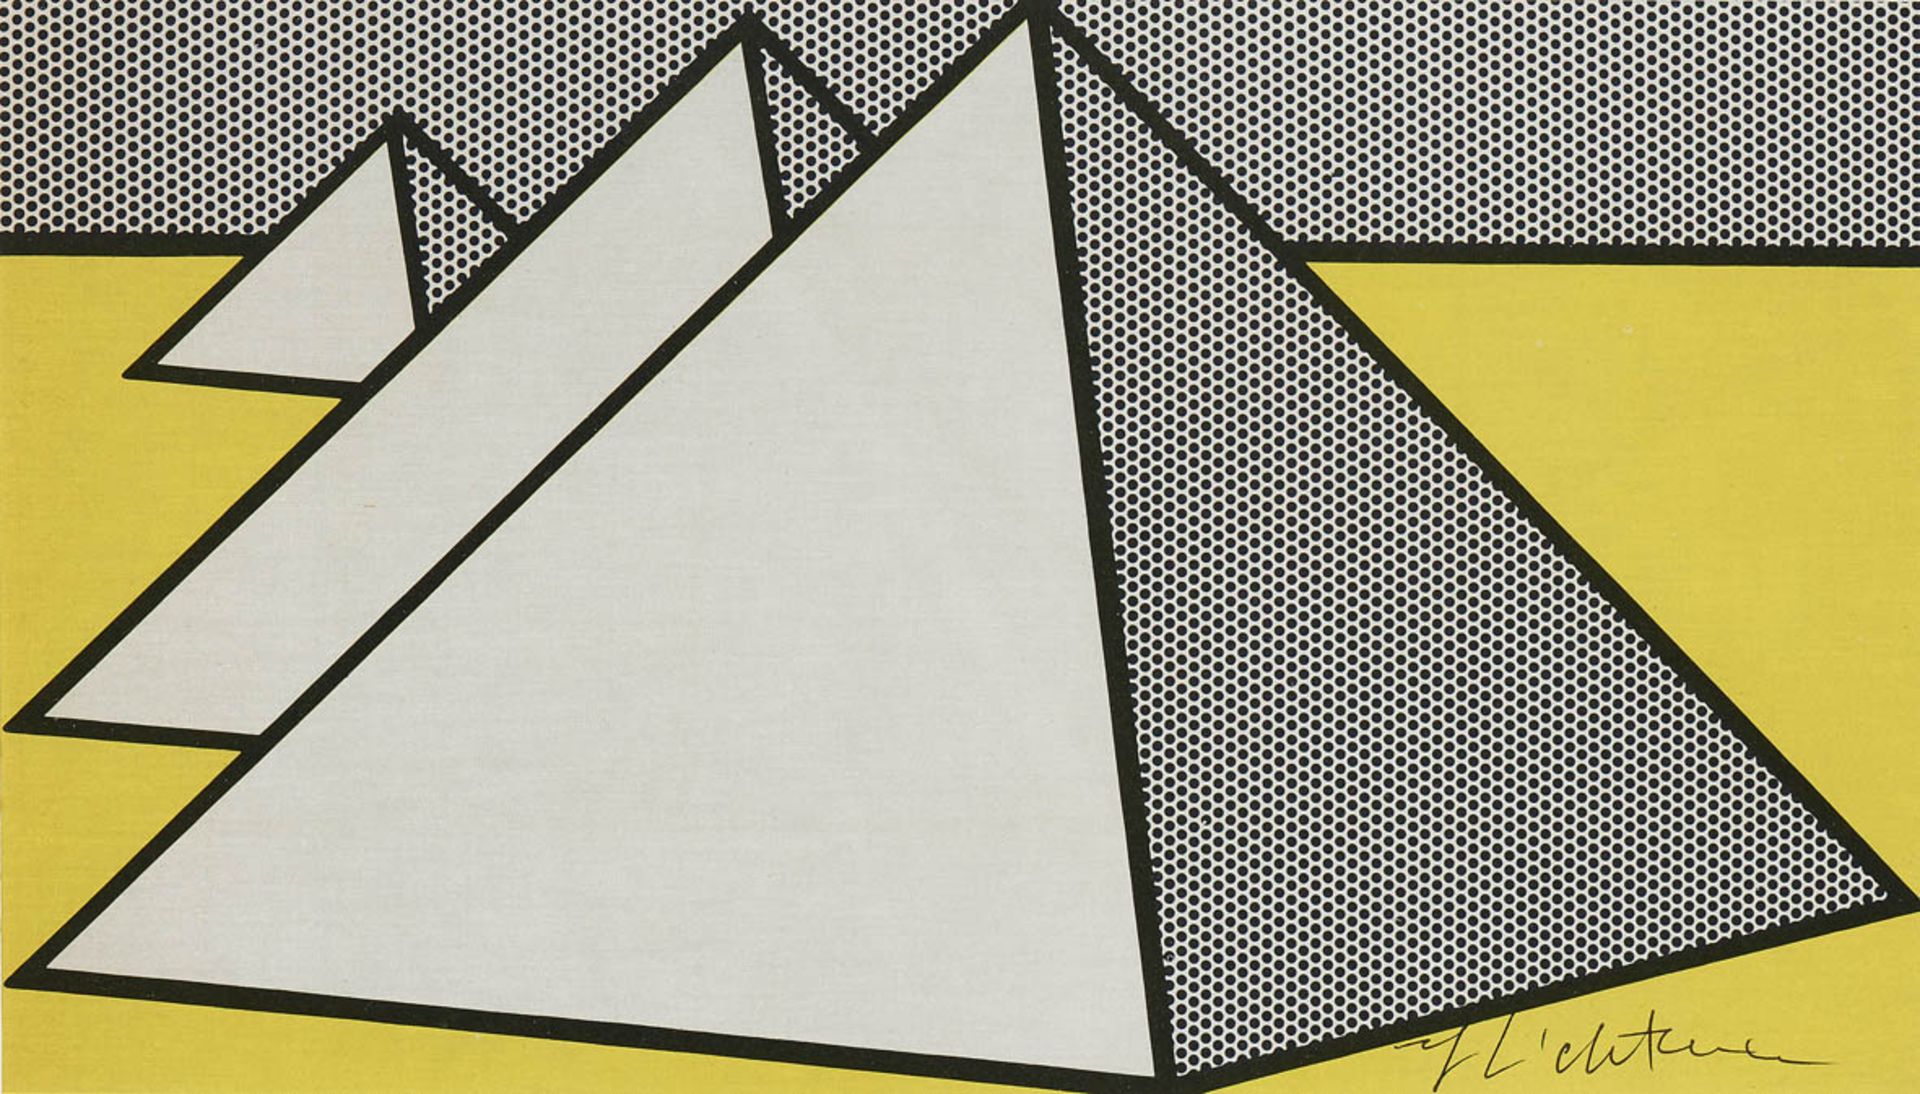 Lichtenstein, Roy1923 New York - 1997 ebendaThe great pyramids. 1969 Bookpageprint.